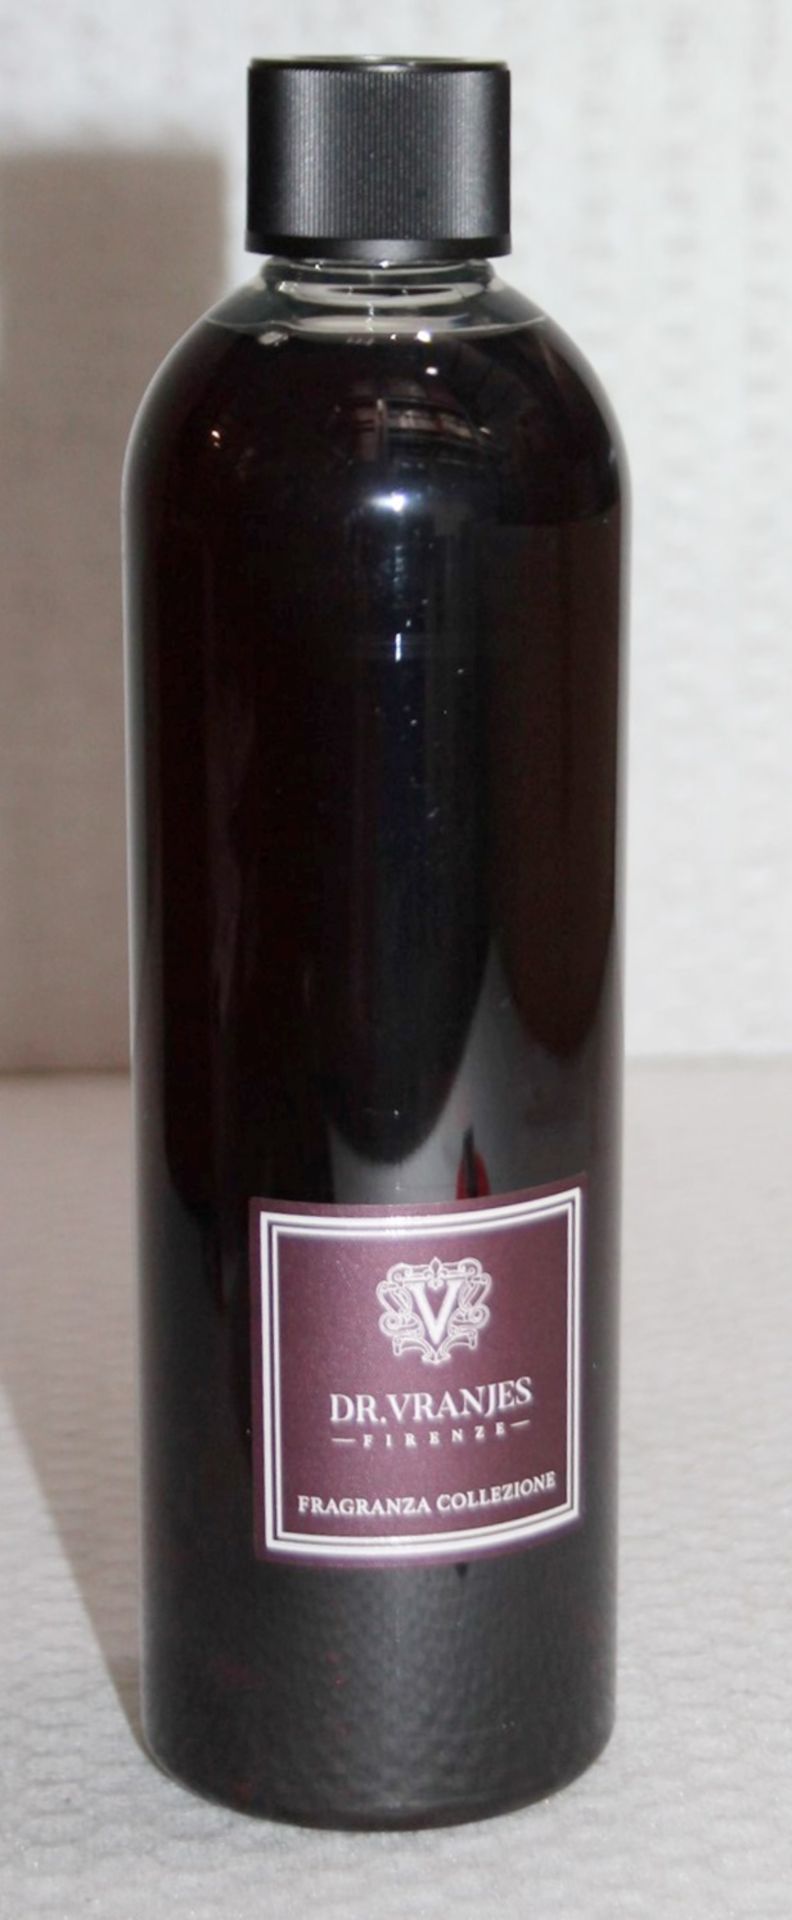 1 x DR. VRANJES FIRENZE 'Rosso Nobile' Fragrance Refill (500ml) - Original Price £71.95 - Unused - Image 3 of 7